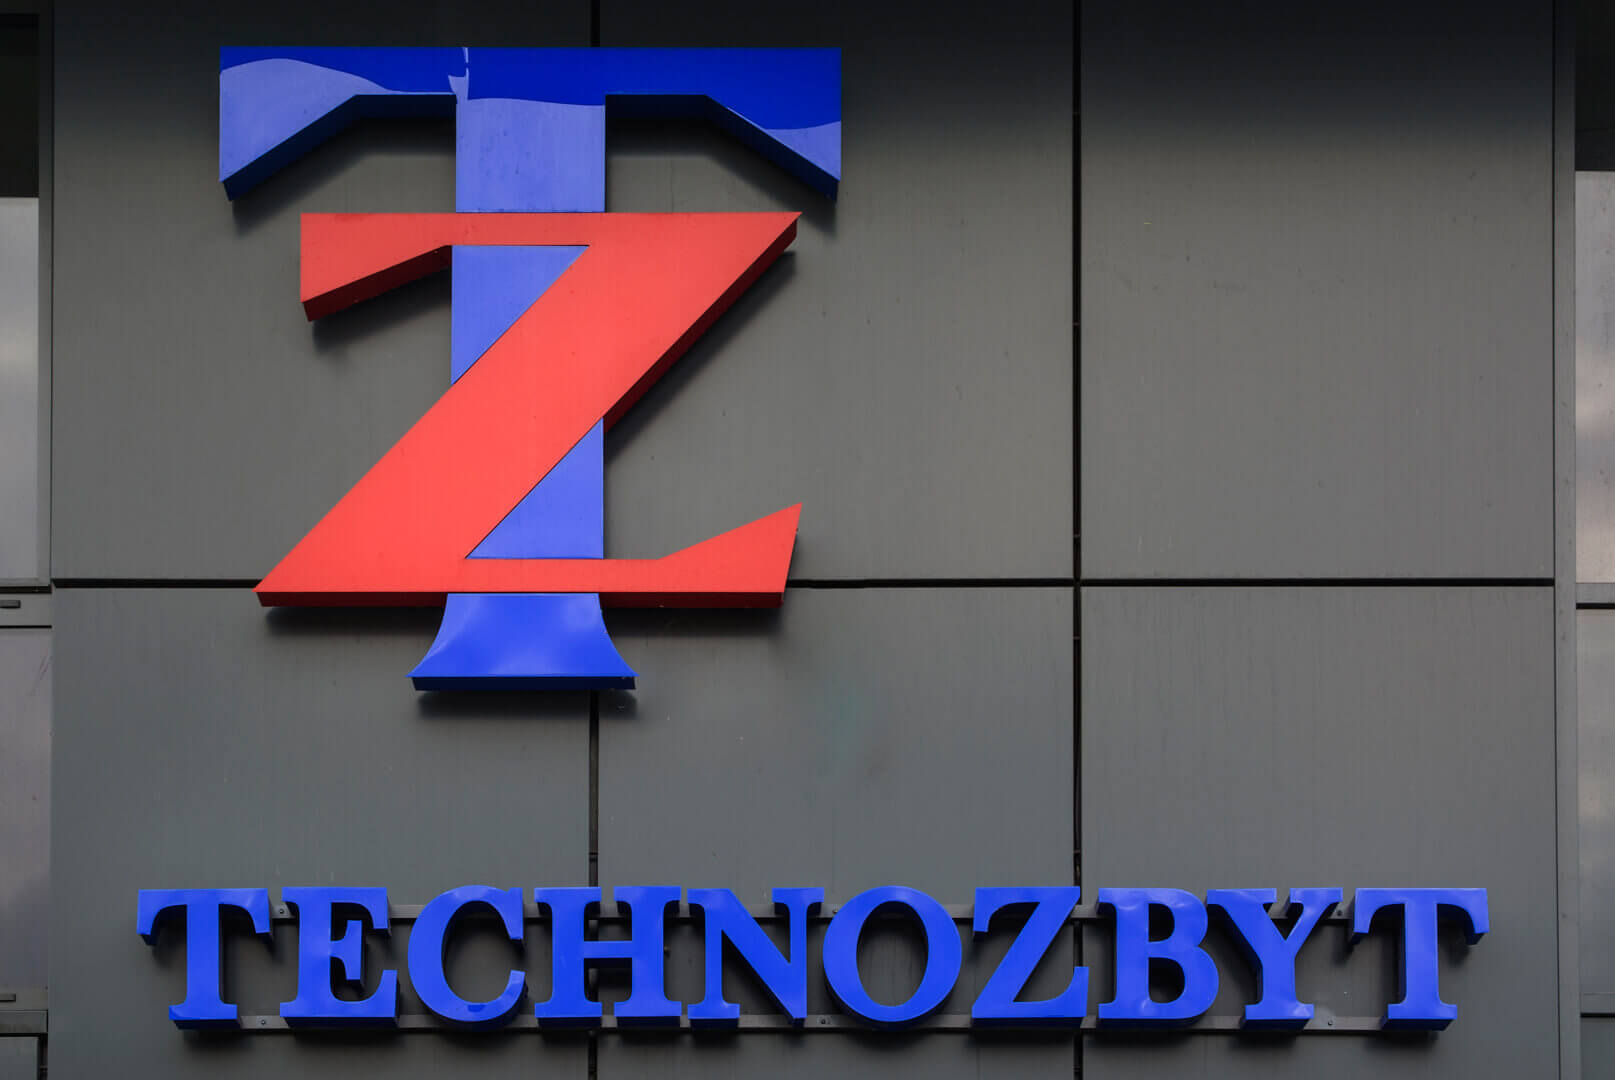 Technozbyt - Technozbyt - Lettres lumineuses en 3D placées en élévation